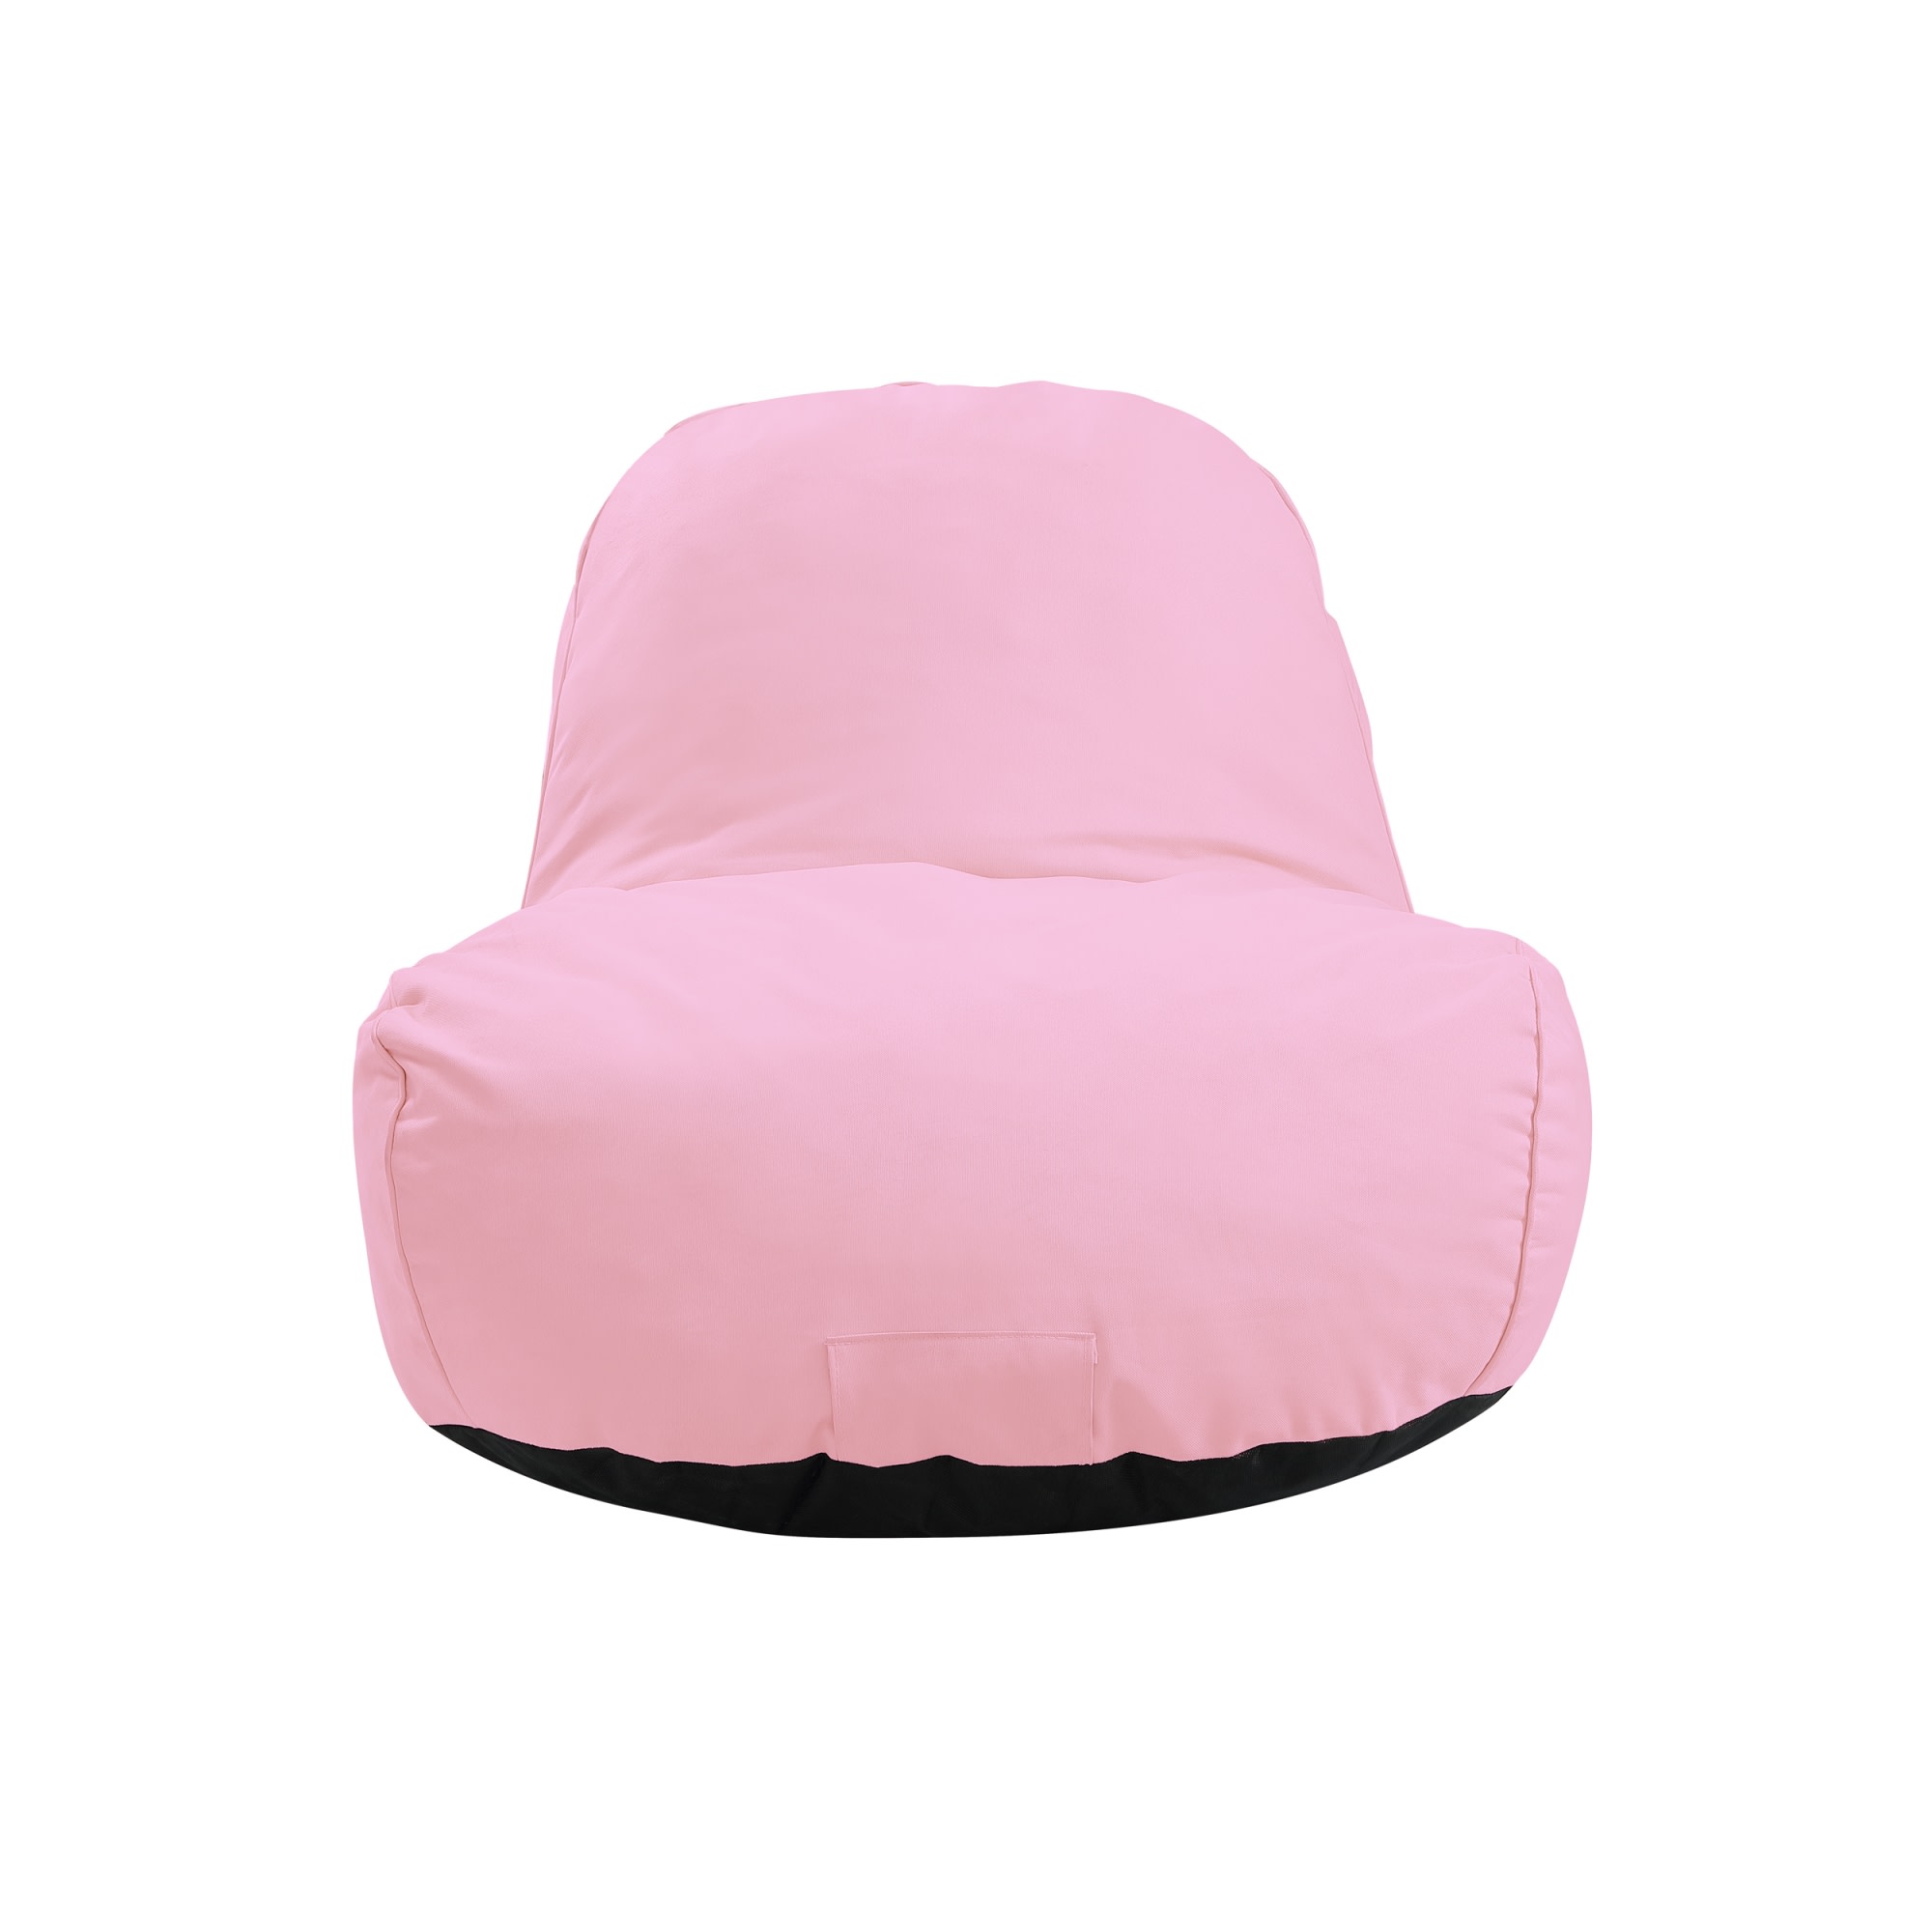 Loungie Nylon Bean Bag Chair Indoor/Outdoor Water Resistant